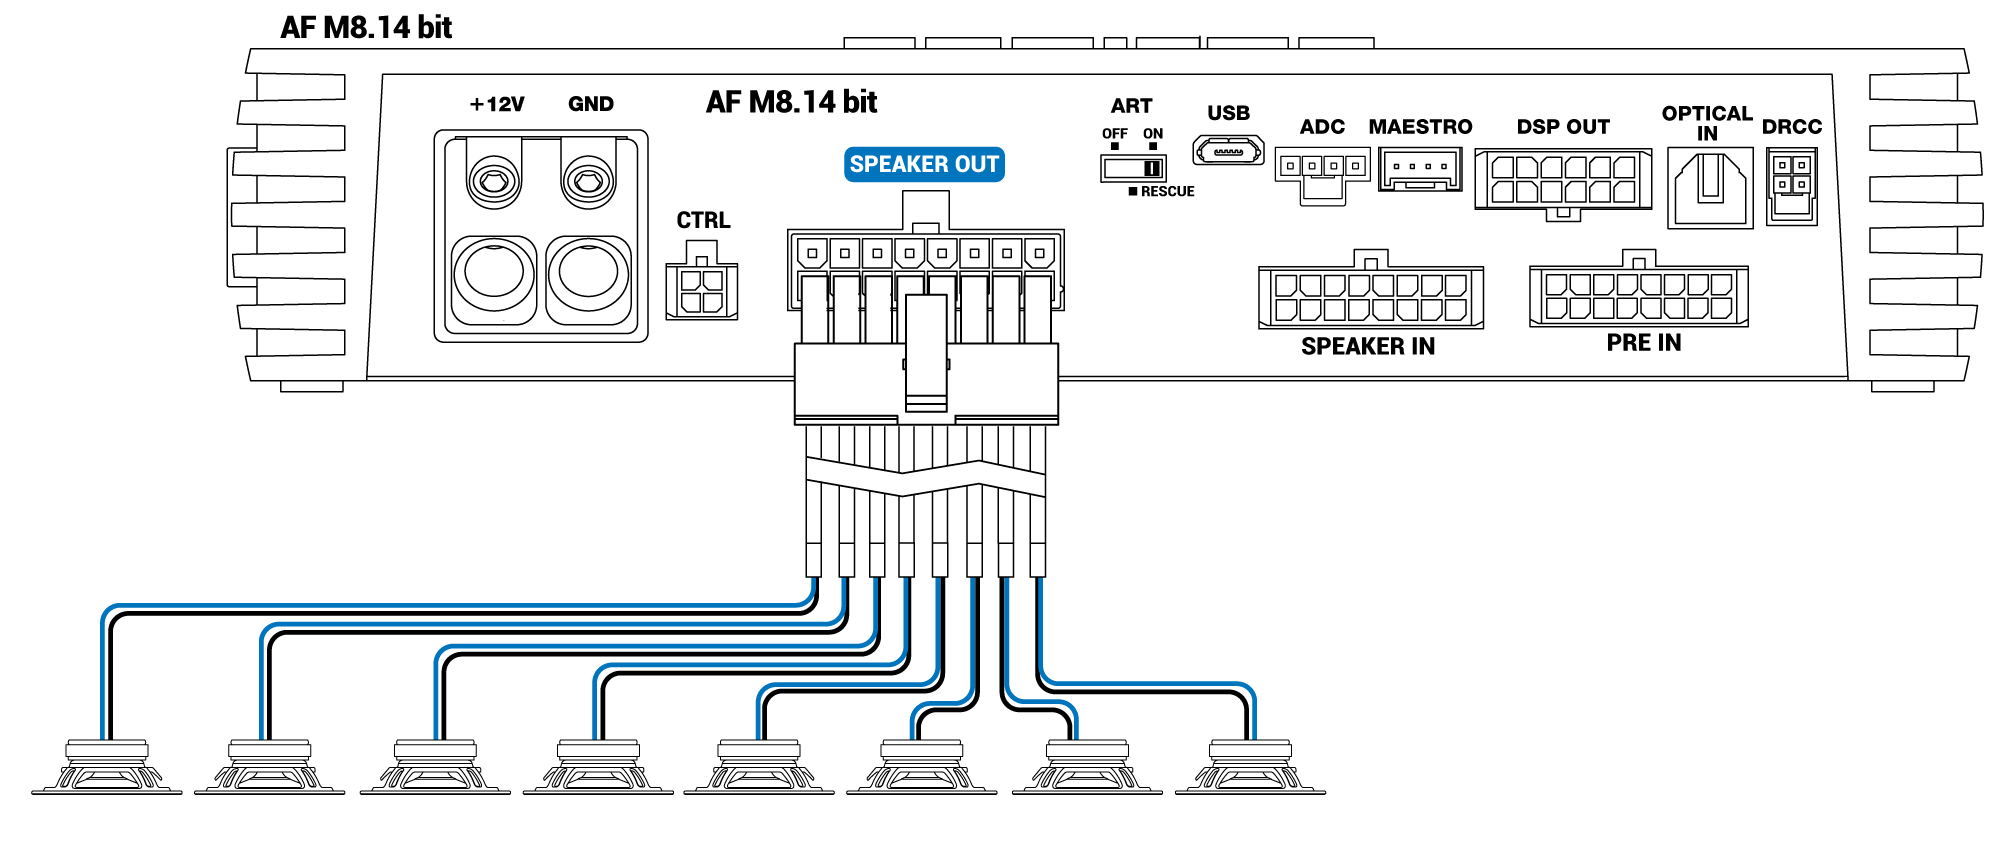 Speaker-out-AF-M8.14-bit.png